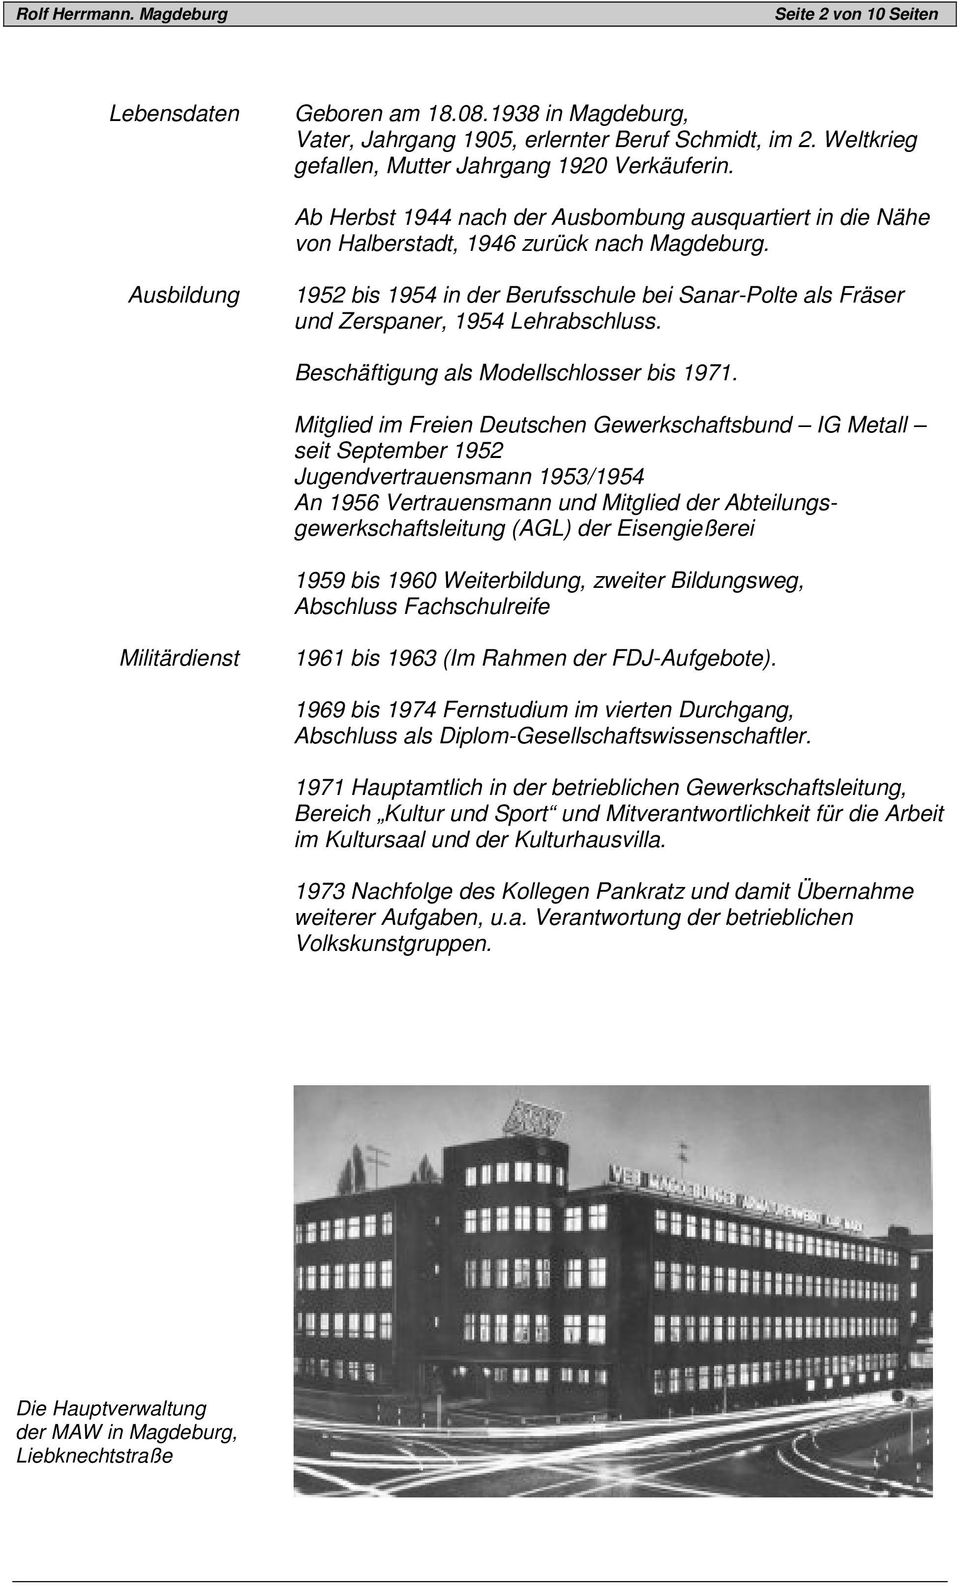 Ausbildung 1952 bis 1954 in der Berufsschule bei Sanar-Polte als Fräser und Zerspaner, 1954 Lehrabschluss. Beschäftigung als Modellschlosser bis 1971.